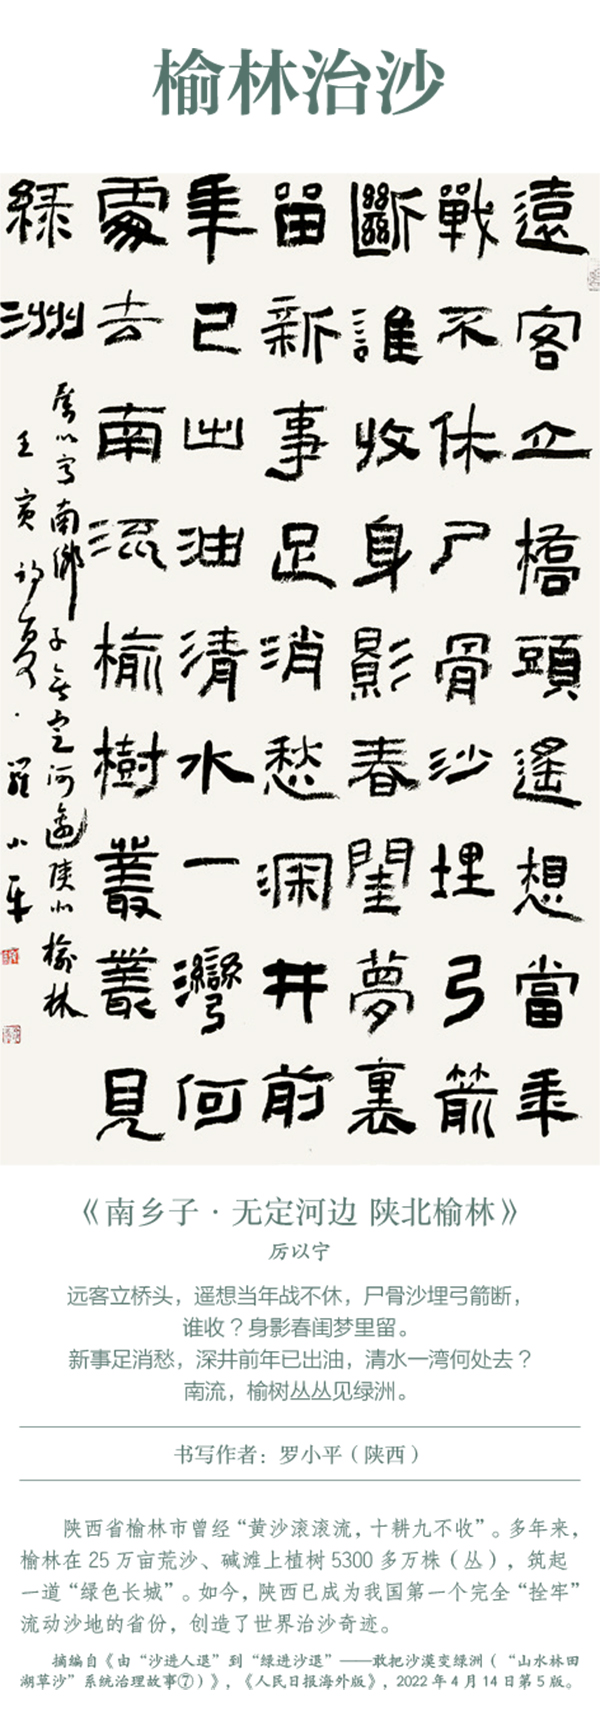 中國書協主題創作書法系列展——美麗中國插圖27題字網